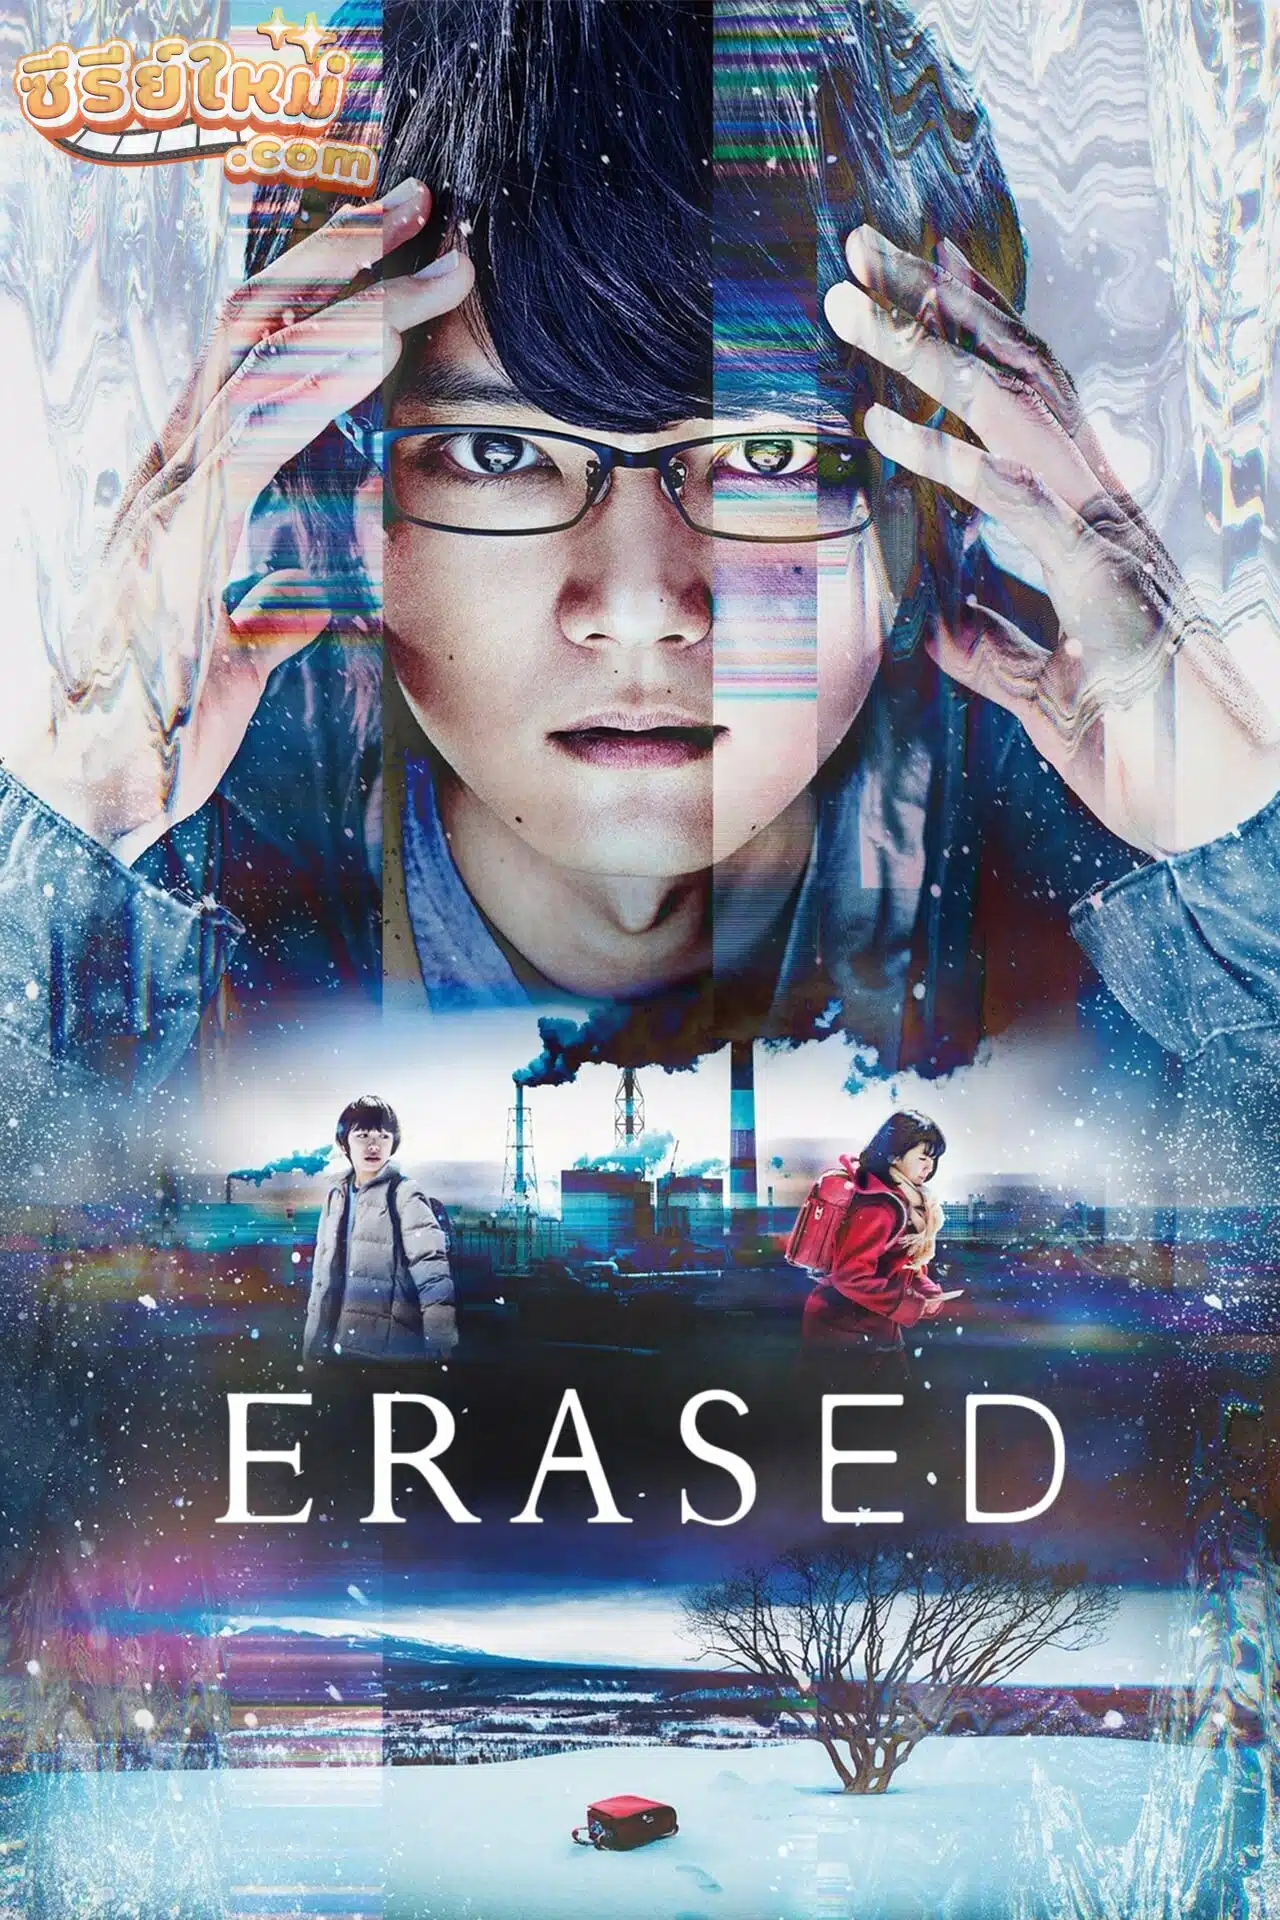 Erased ย้อนเวลากลับไปลบอนาคต (2017)